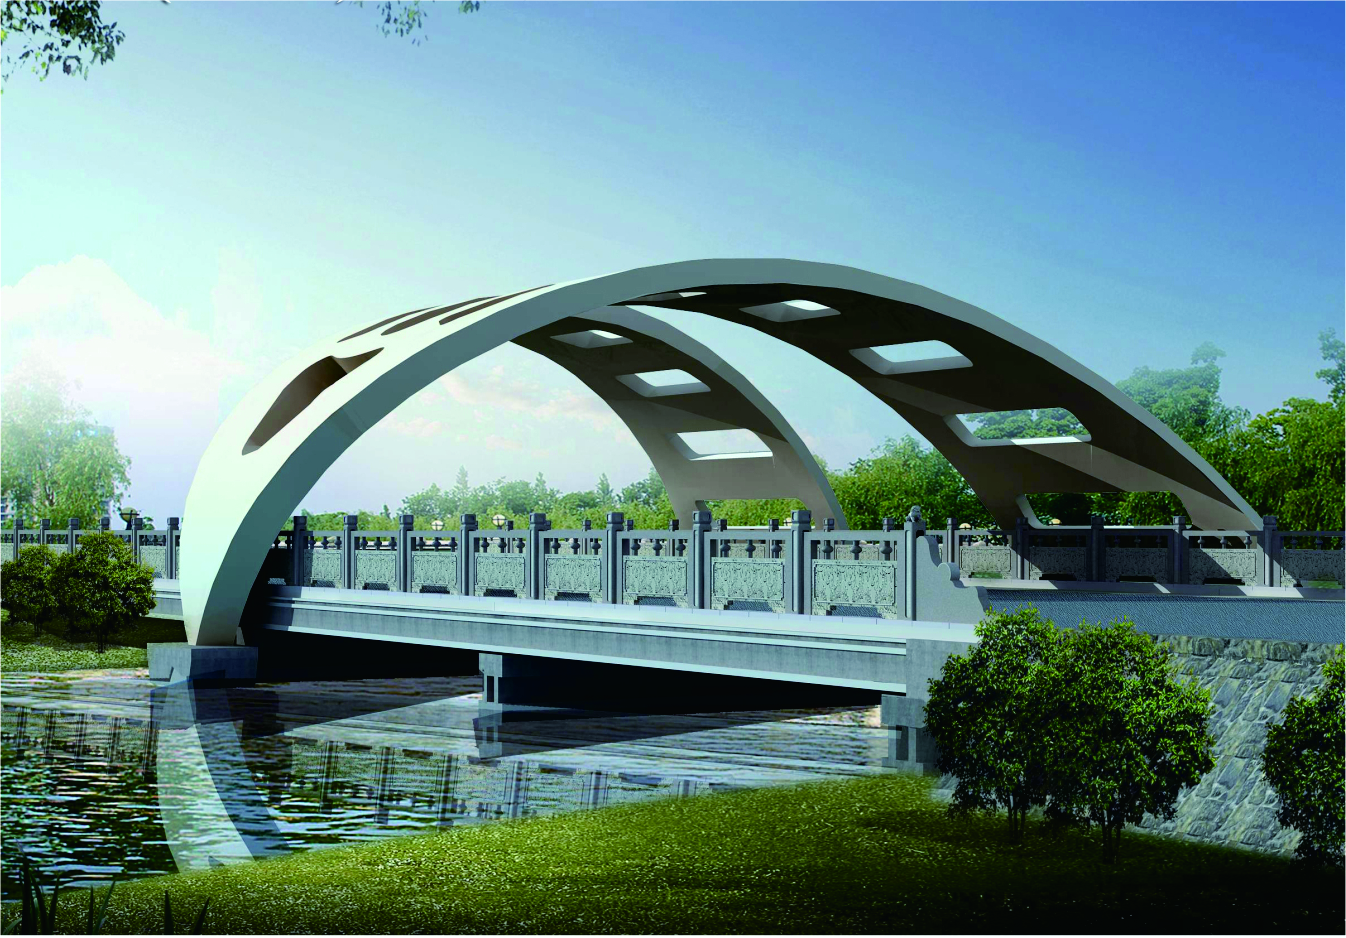 本桥下部采用梁桥形式,上部造型选用鹰嘴景观造型,突出地方特色文化.